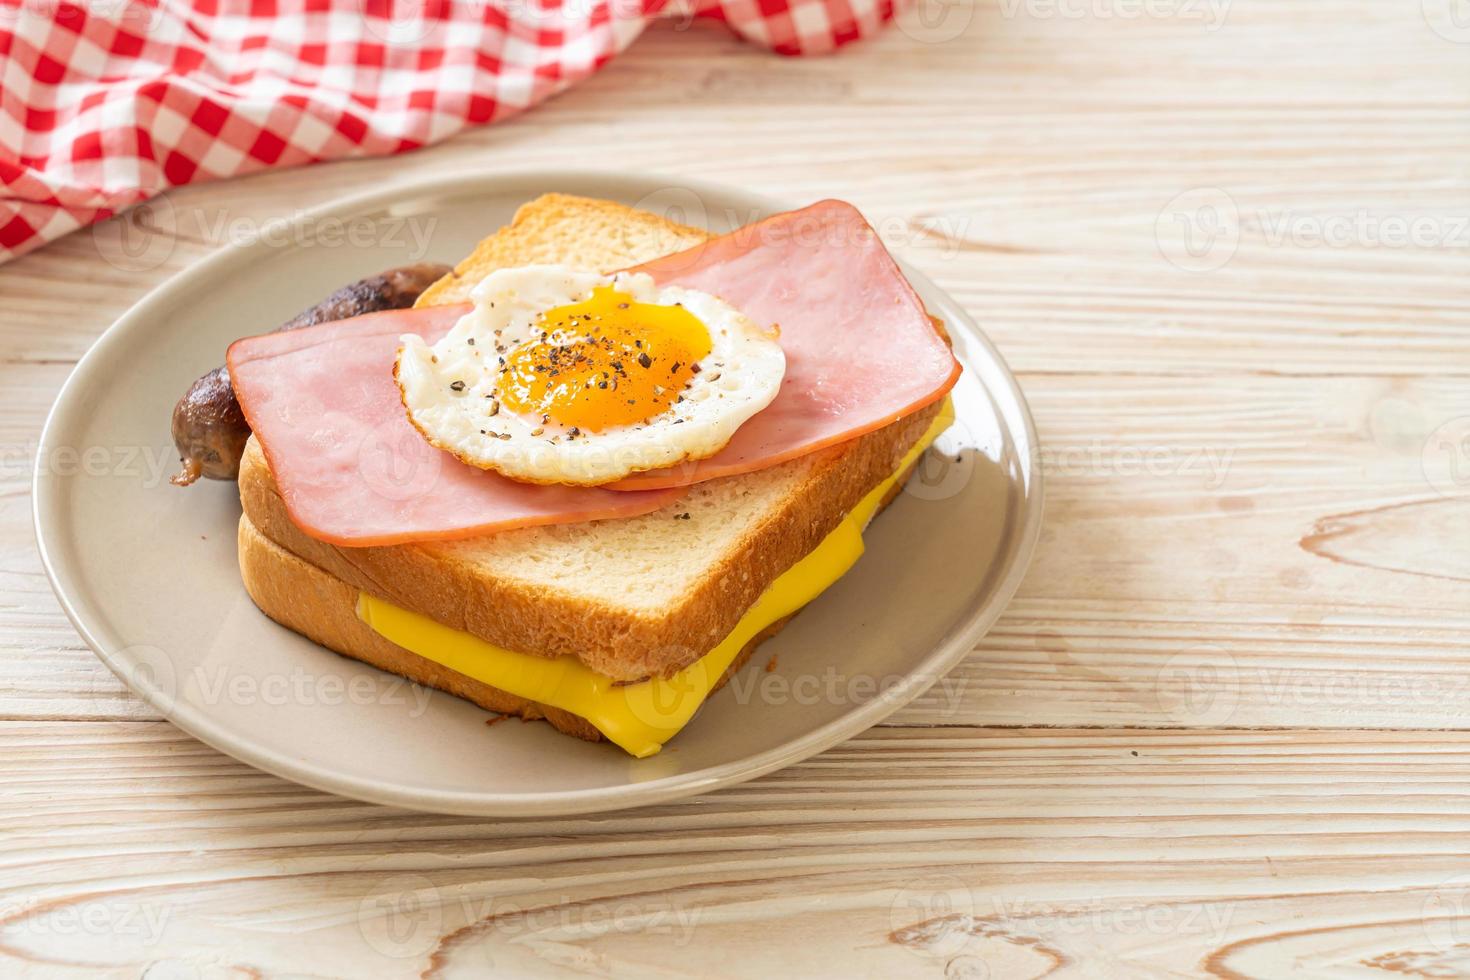 pão caseiro queijo torrado com presunto coberto e ovo frito com linguiça de porco no café da manhã foto